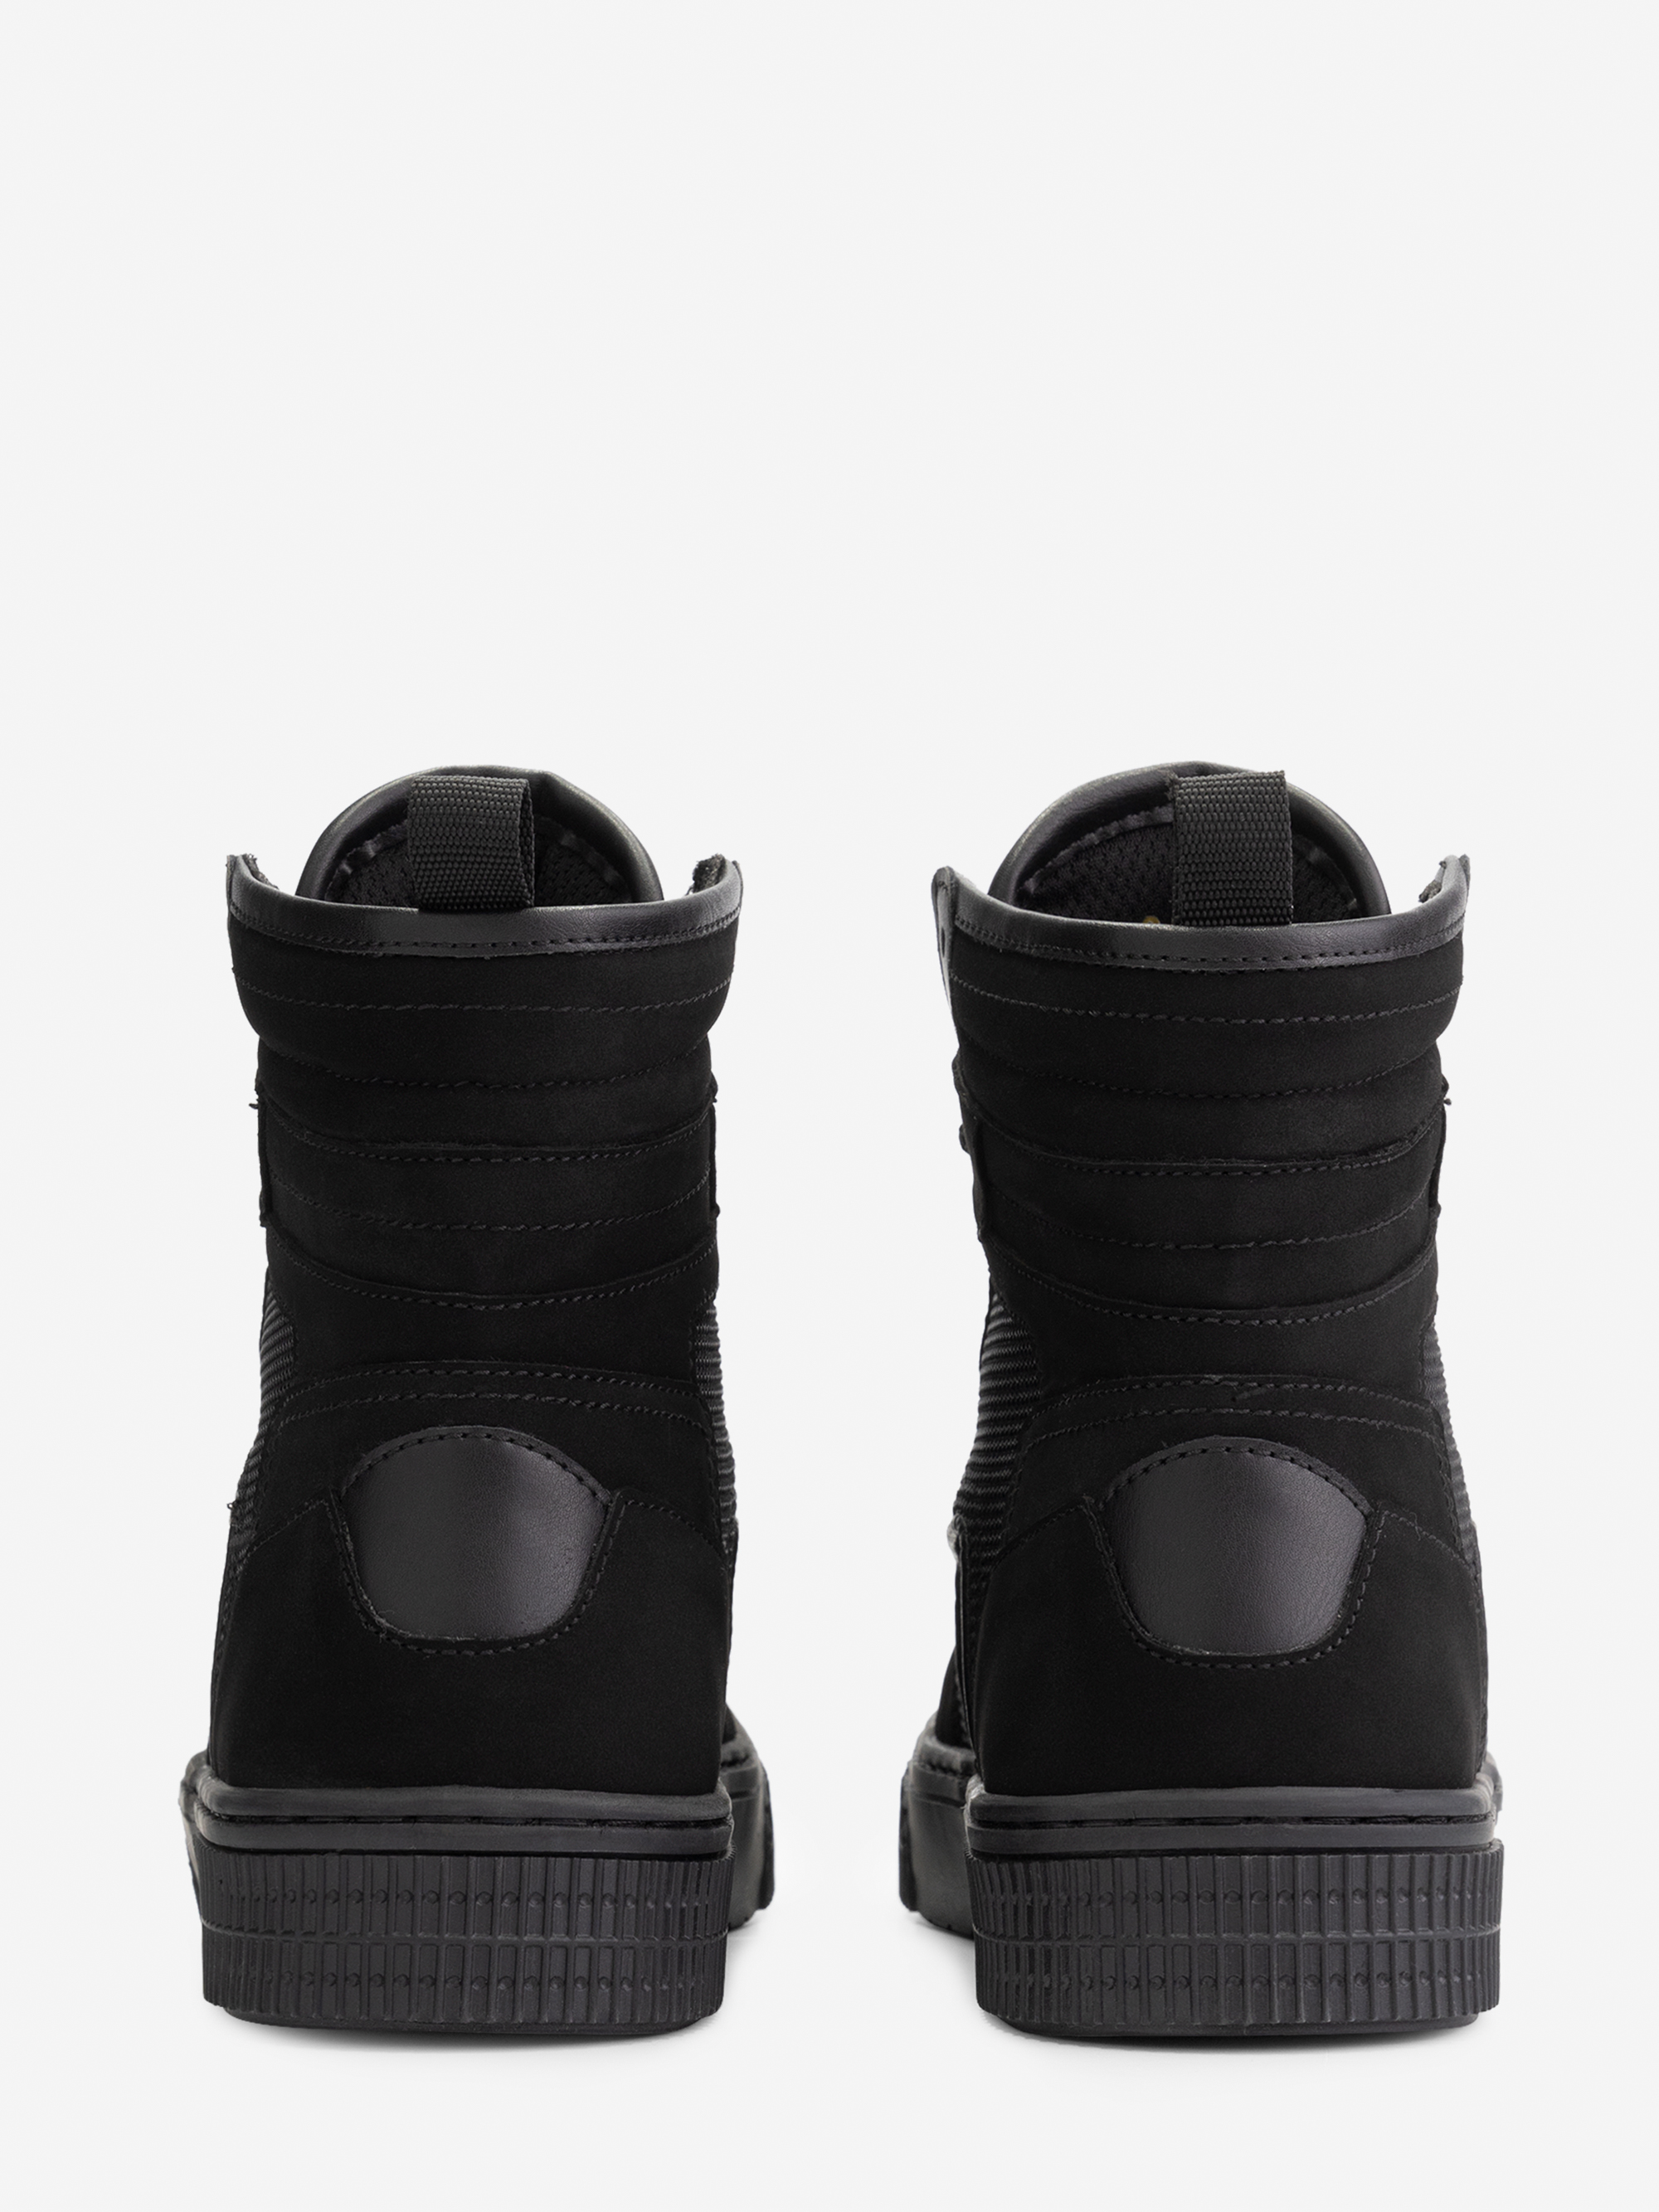 Black On Black Sneakers